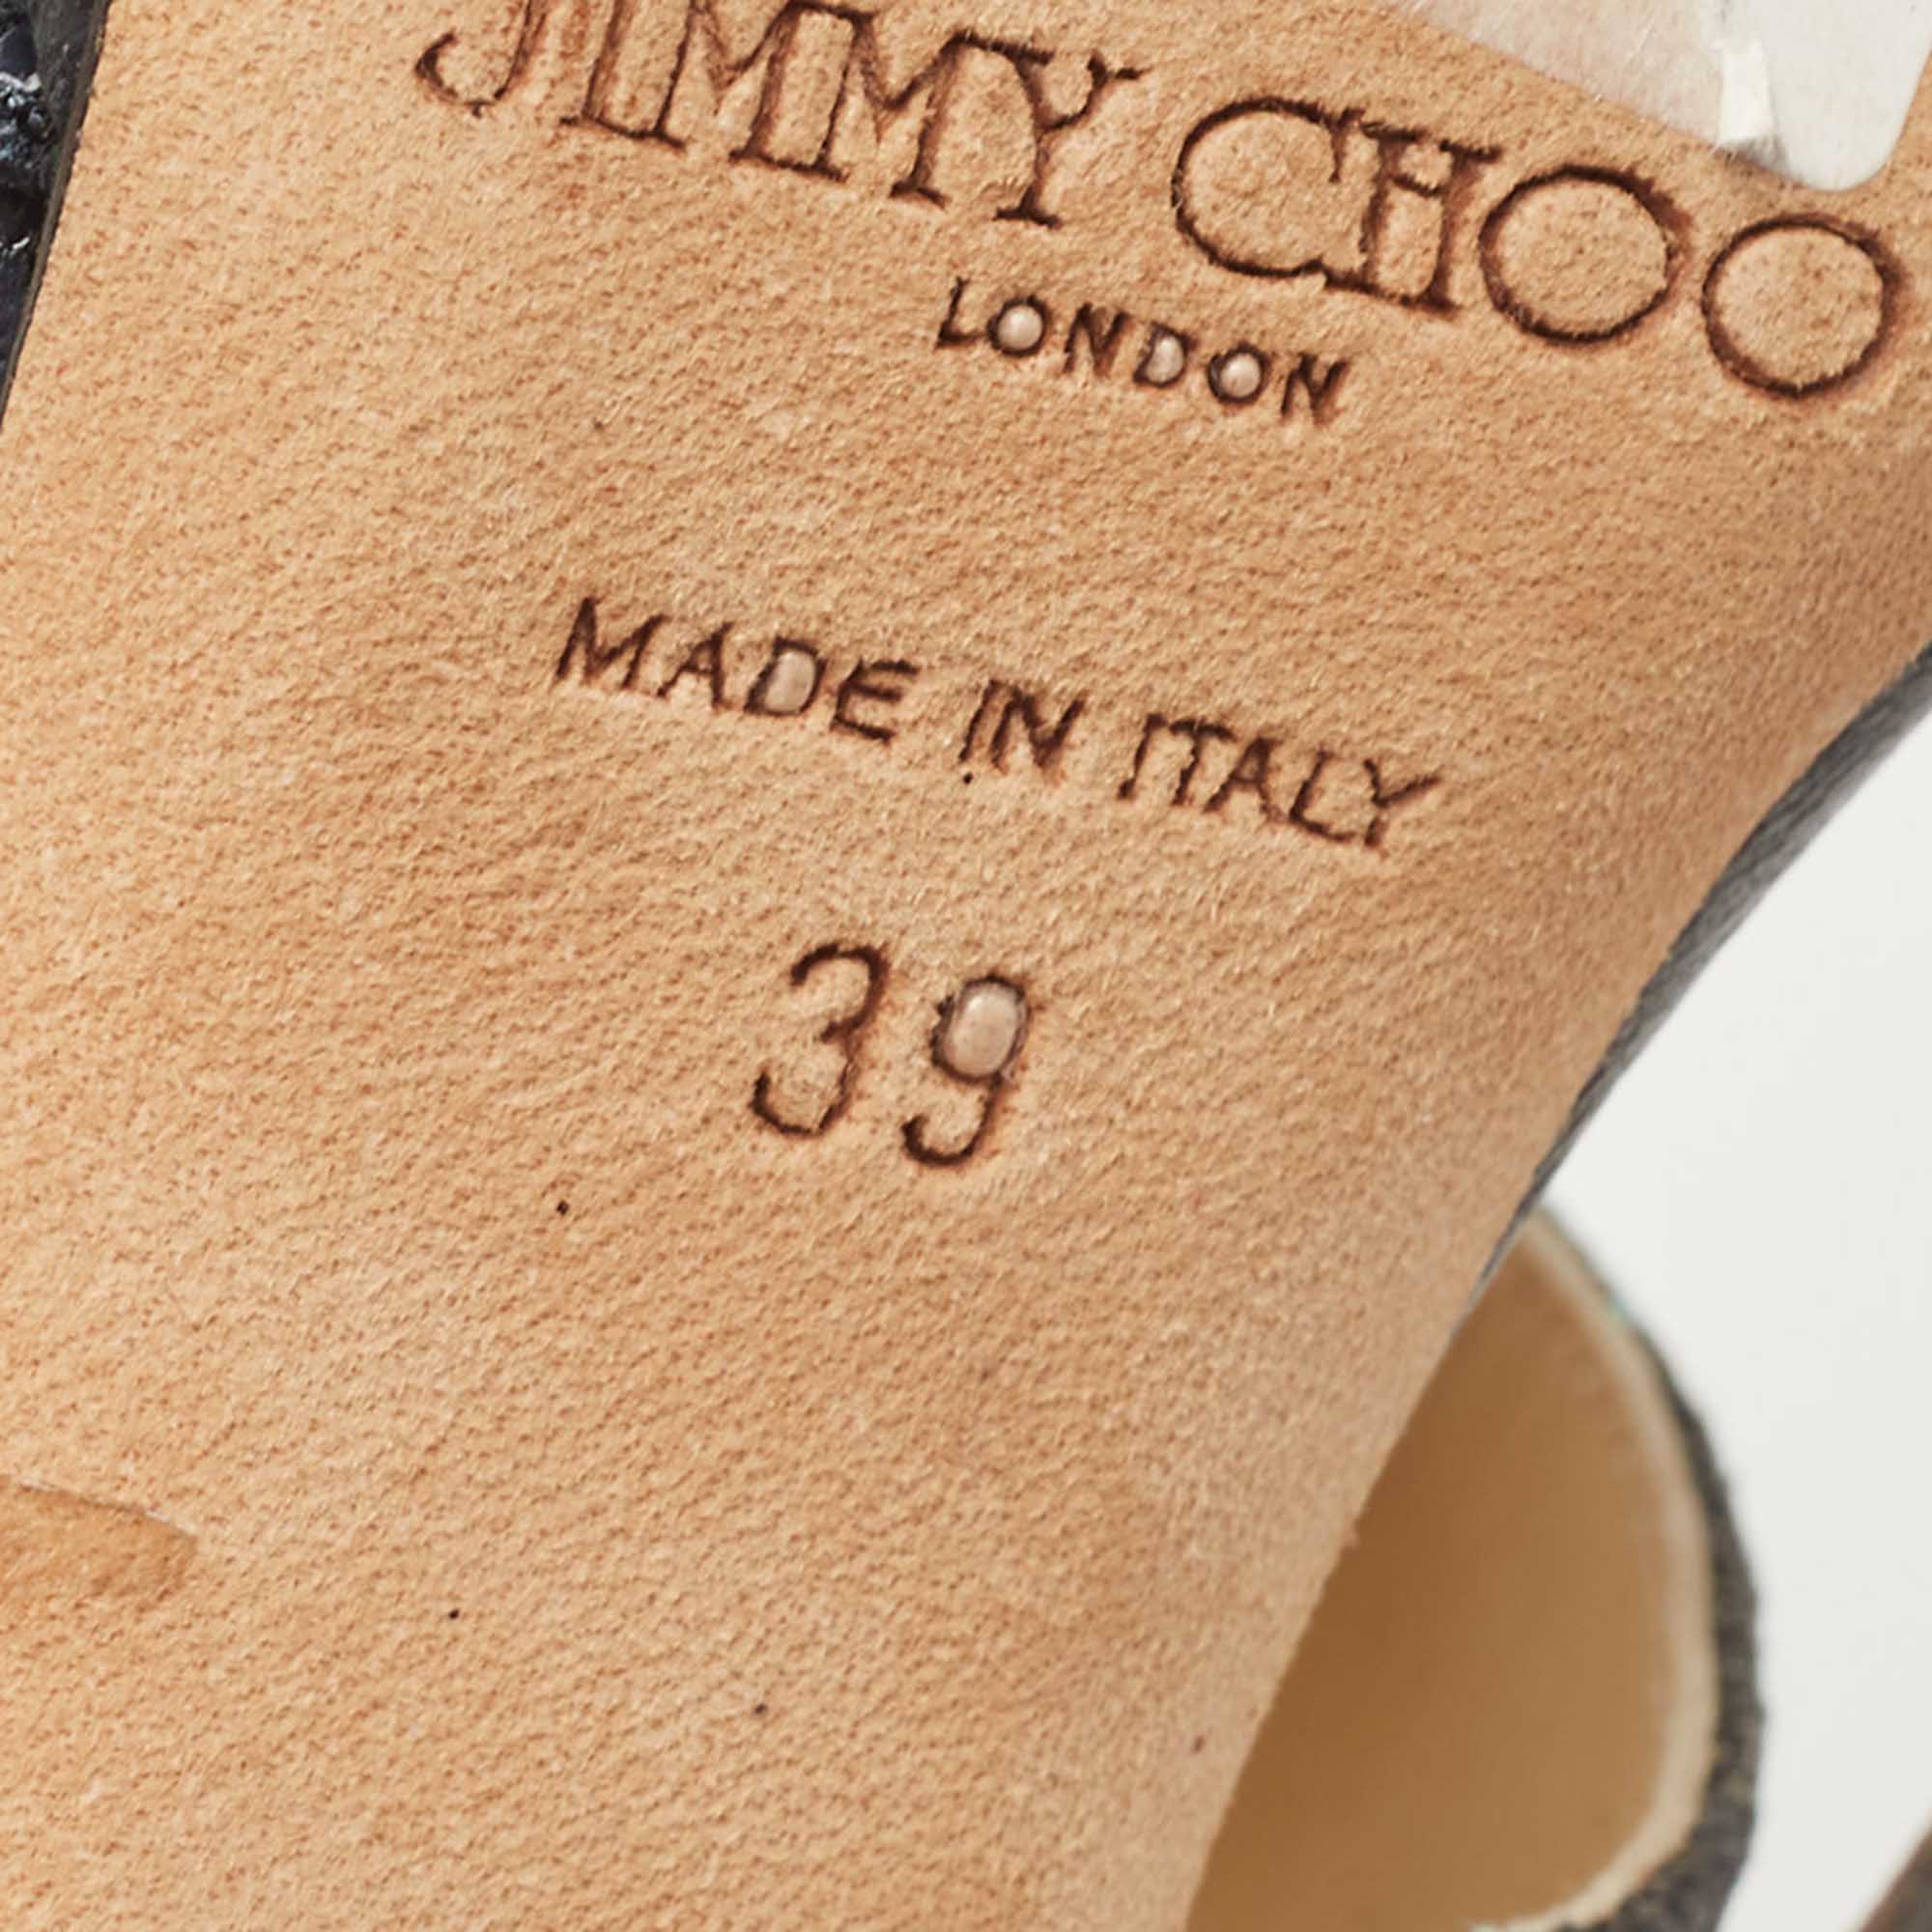 Jimmy Choo Black Glitter Suede Open Toe Pumps Size 39